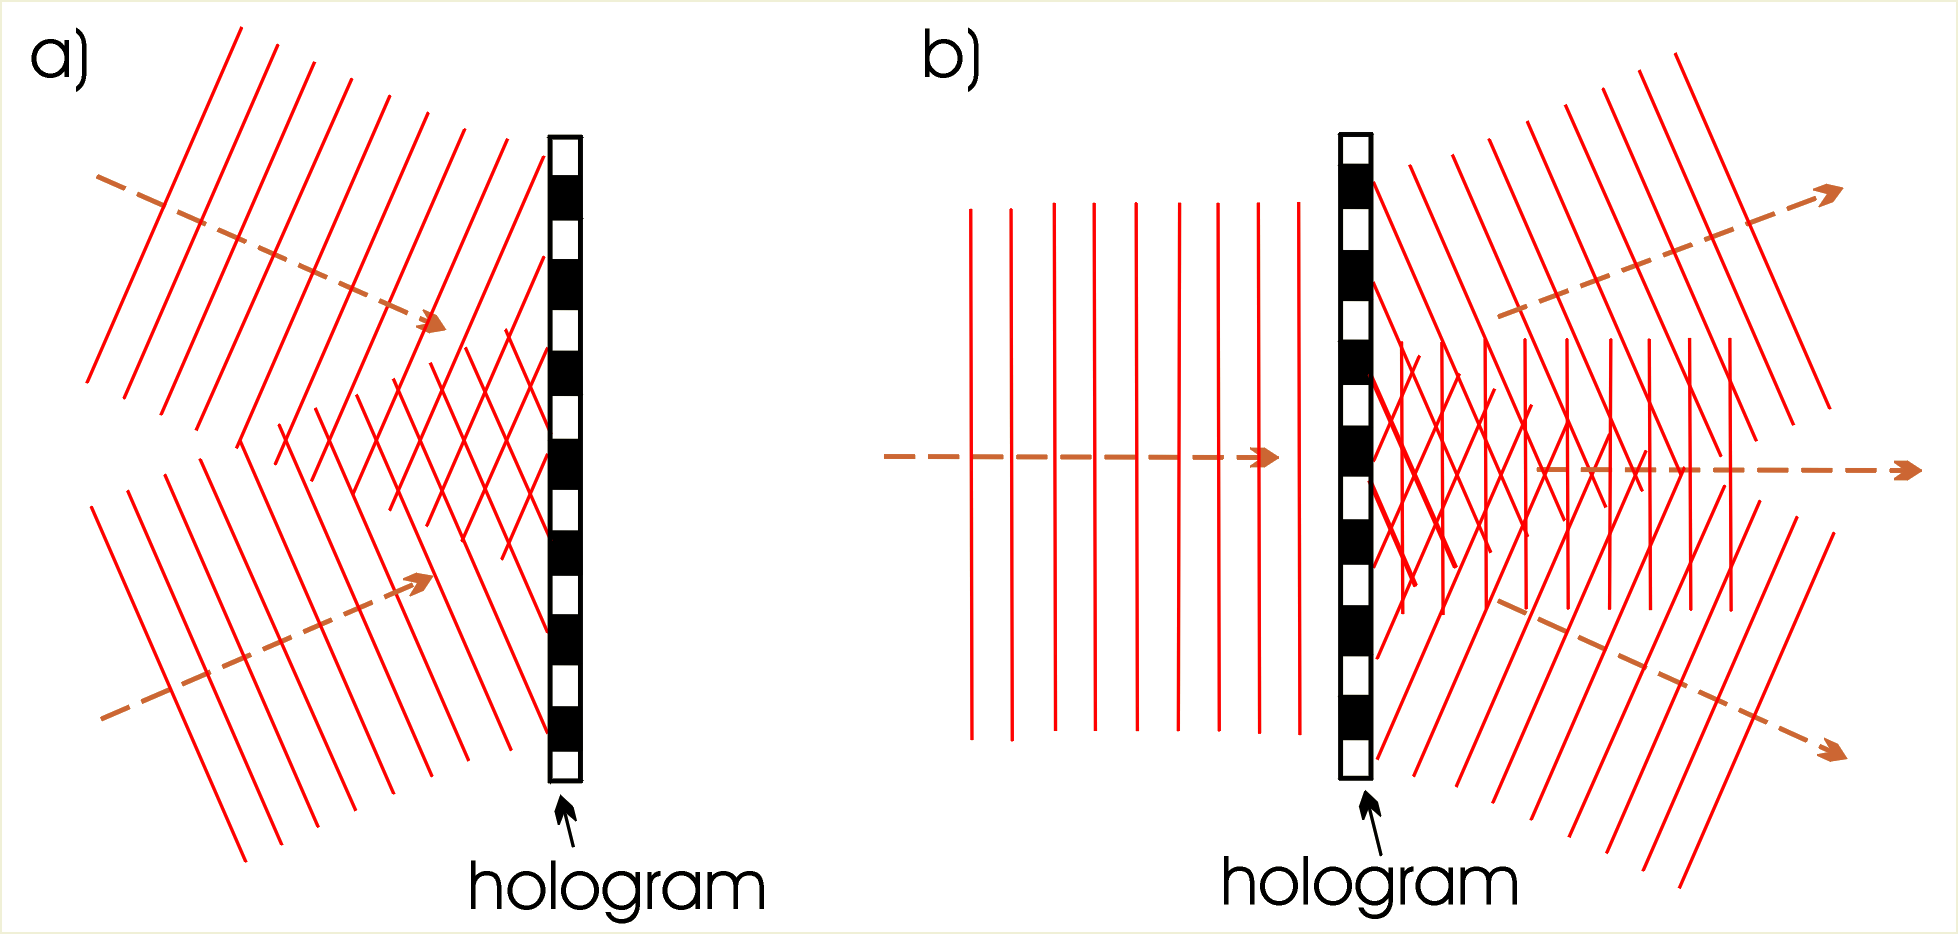 a) Tworzenie się hologramu w postaci regularnej siatki dyfrakcyjnej, gdy na kliszę padają dwie fale płaskie, b) odtwarzanie powierzchni falowej jest jednoznaczne ze zwykłą dyfrakcją na siatce dyfrakcyjnej